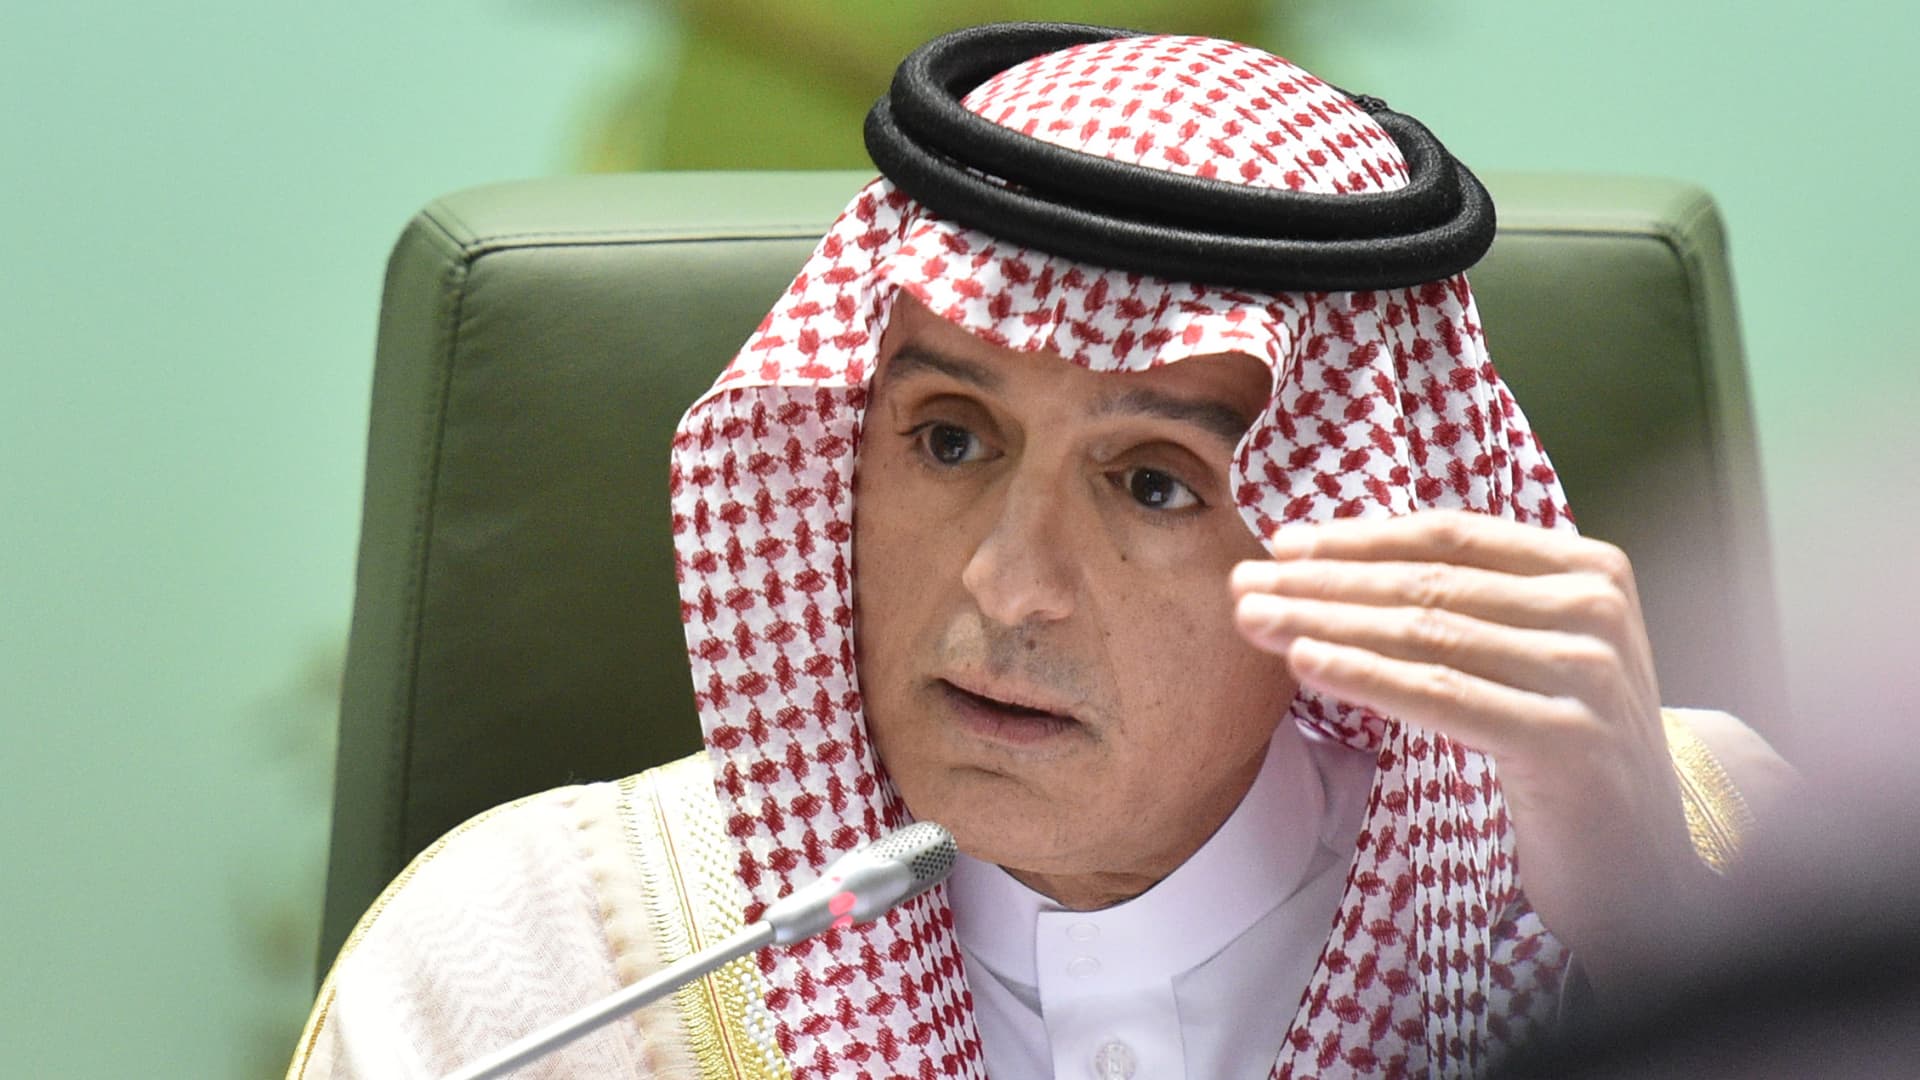 Saudskoarabské vzťahy so Spojenými štátmi a Čínou nie sú výlučné: Al-Jubeir